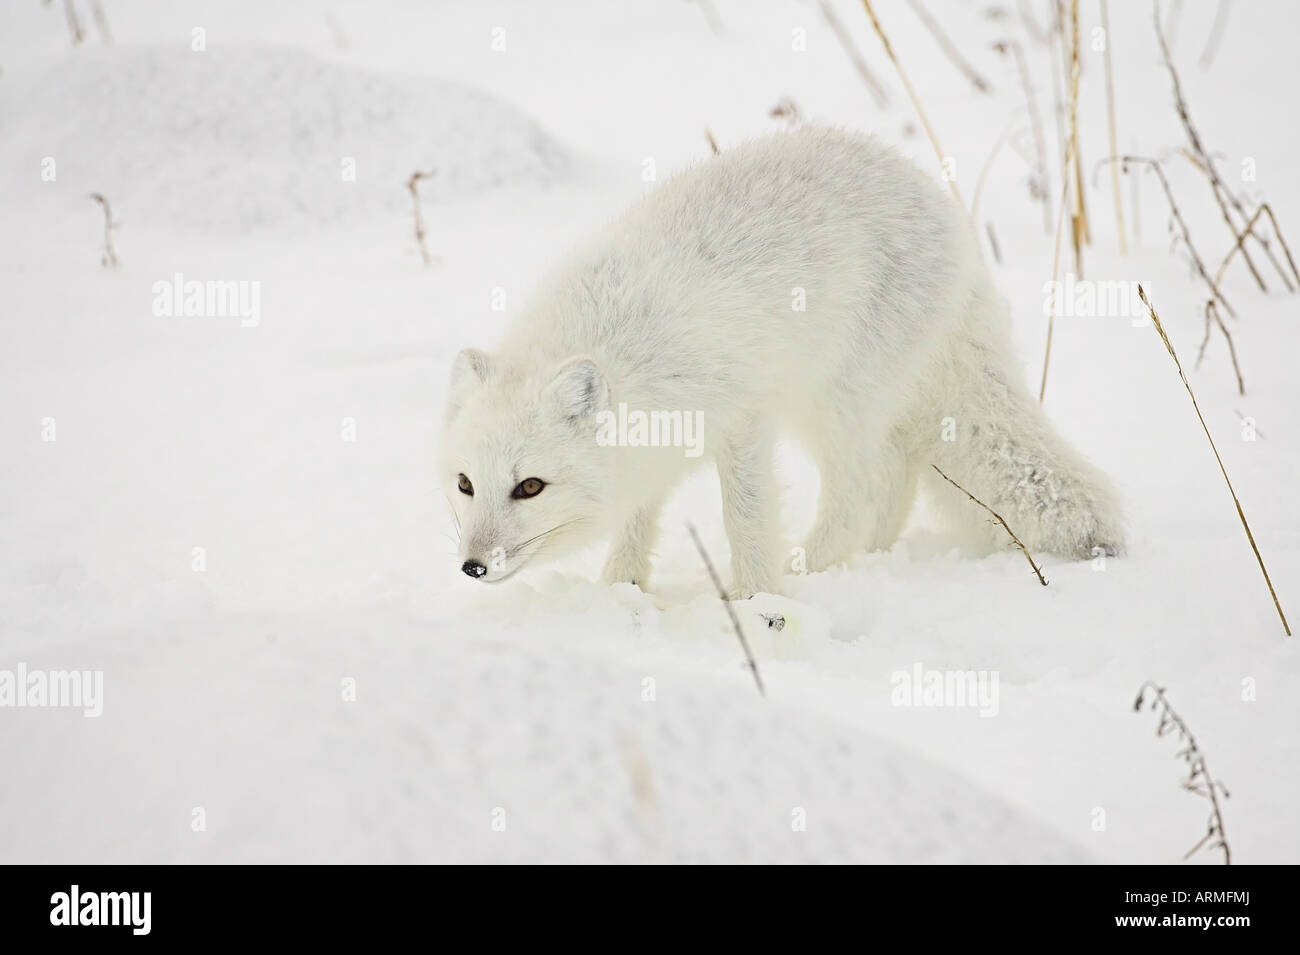 Le renard arctique (Alopex lagopus) dans la neige, Churchill, Manitoba, Canada, Amérique du Nord Banque D'Images